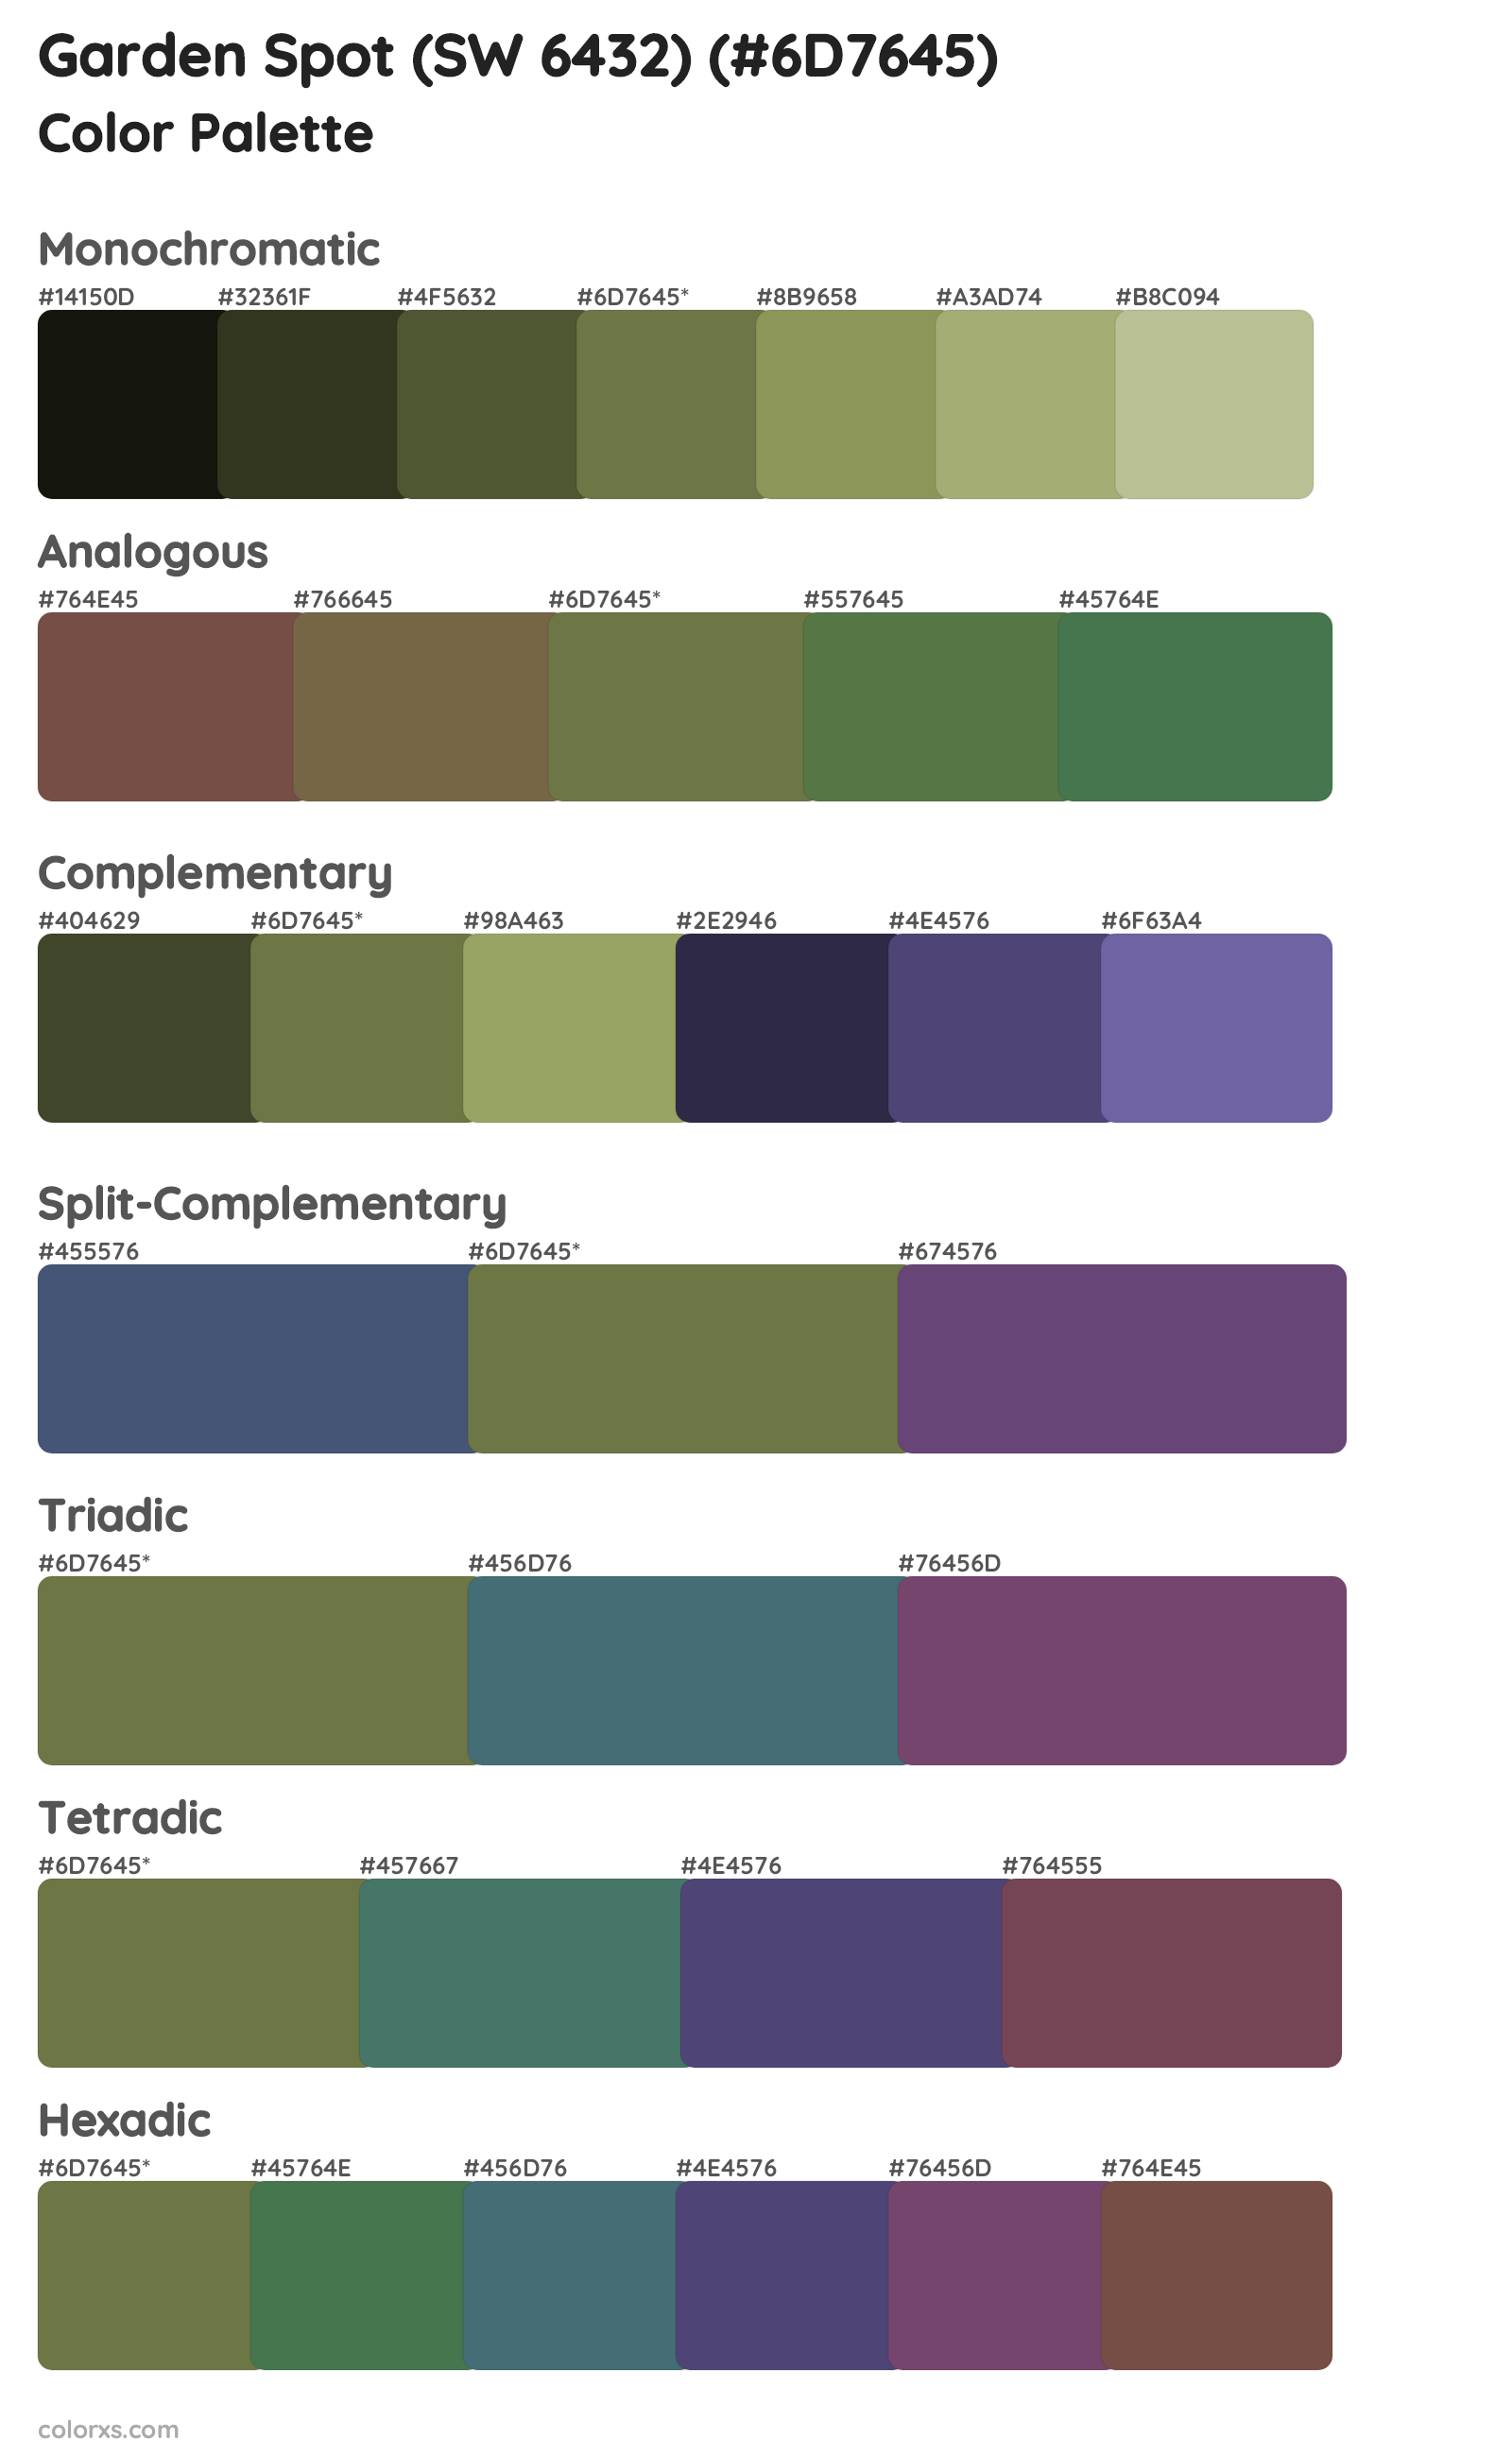 Garden Spot (SW 6432) Color Scheme Palettes